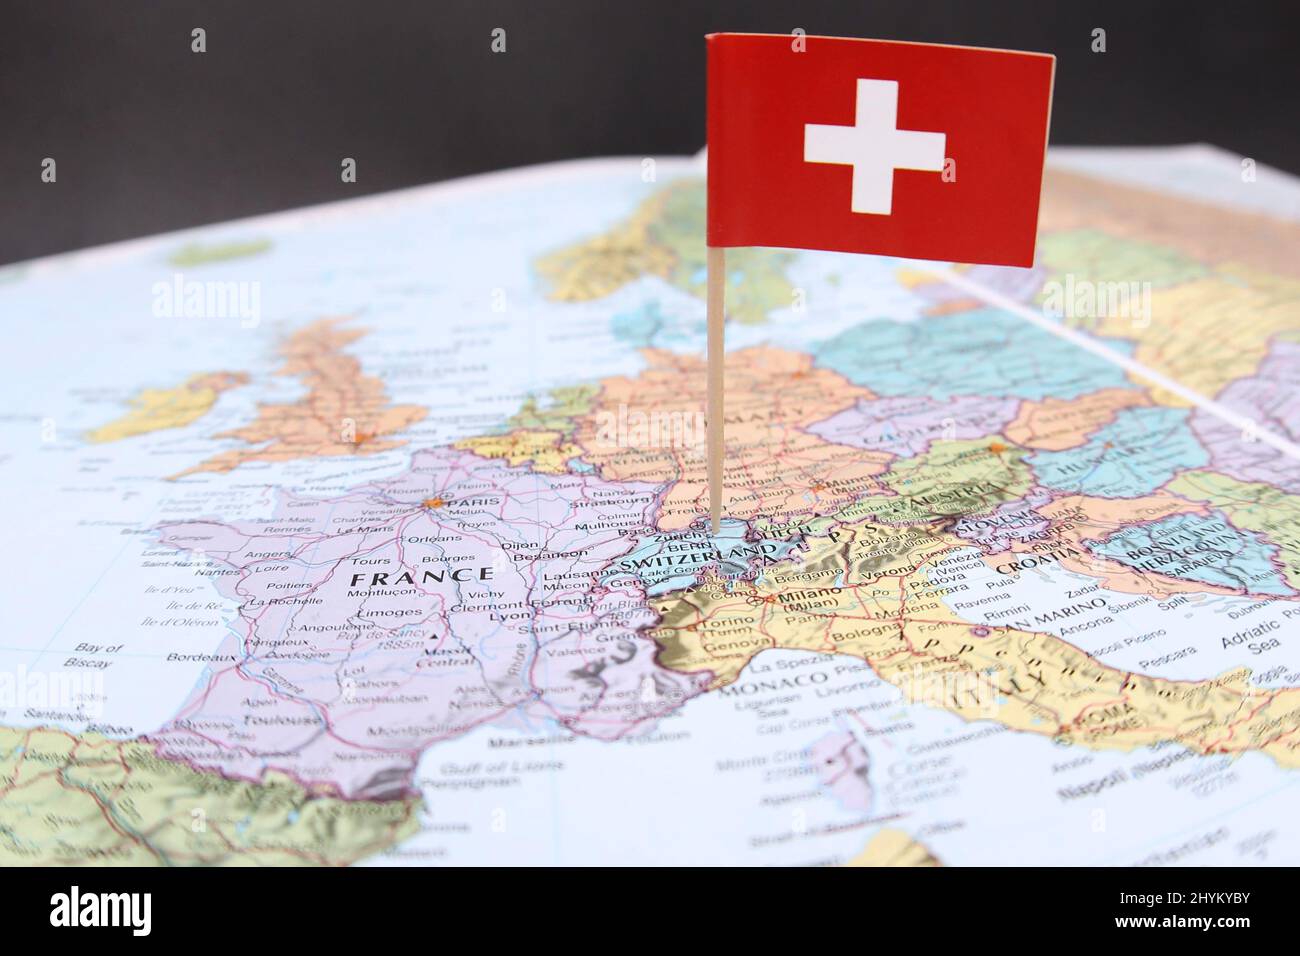 La bandiera nazionale svizzera si stacca da un'immagine ravvicinata di una mappa colorata o di un atlante che si concentra sull'Europa. Il paese della Svizzera con i suoi vicini Foto Stock